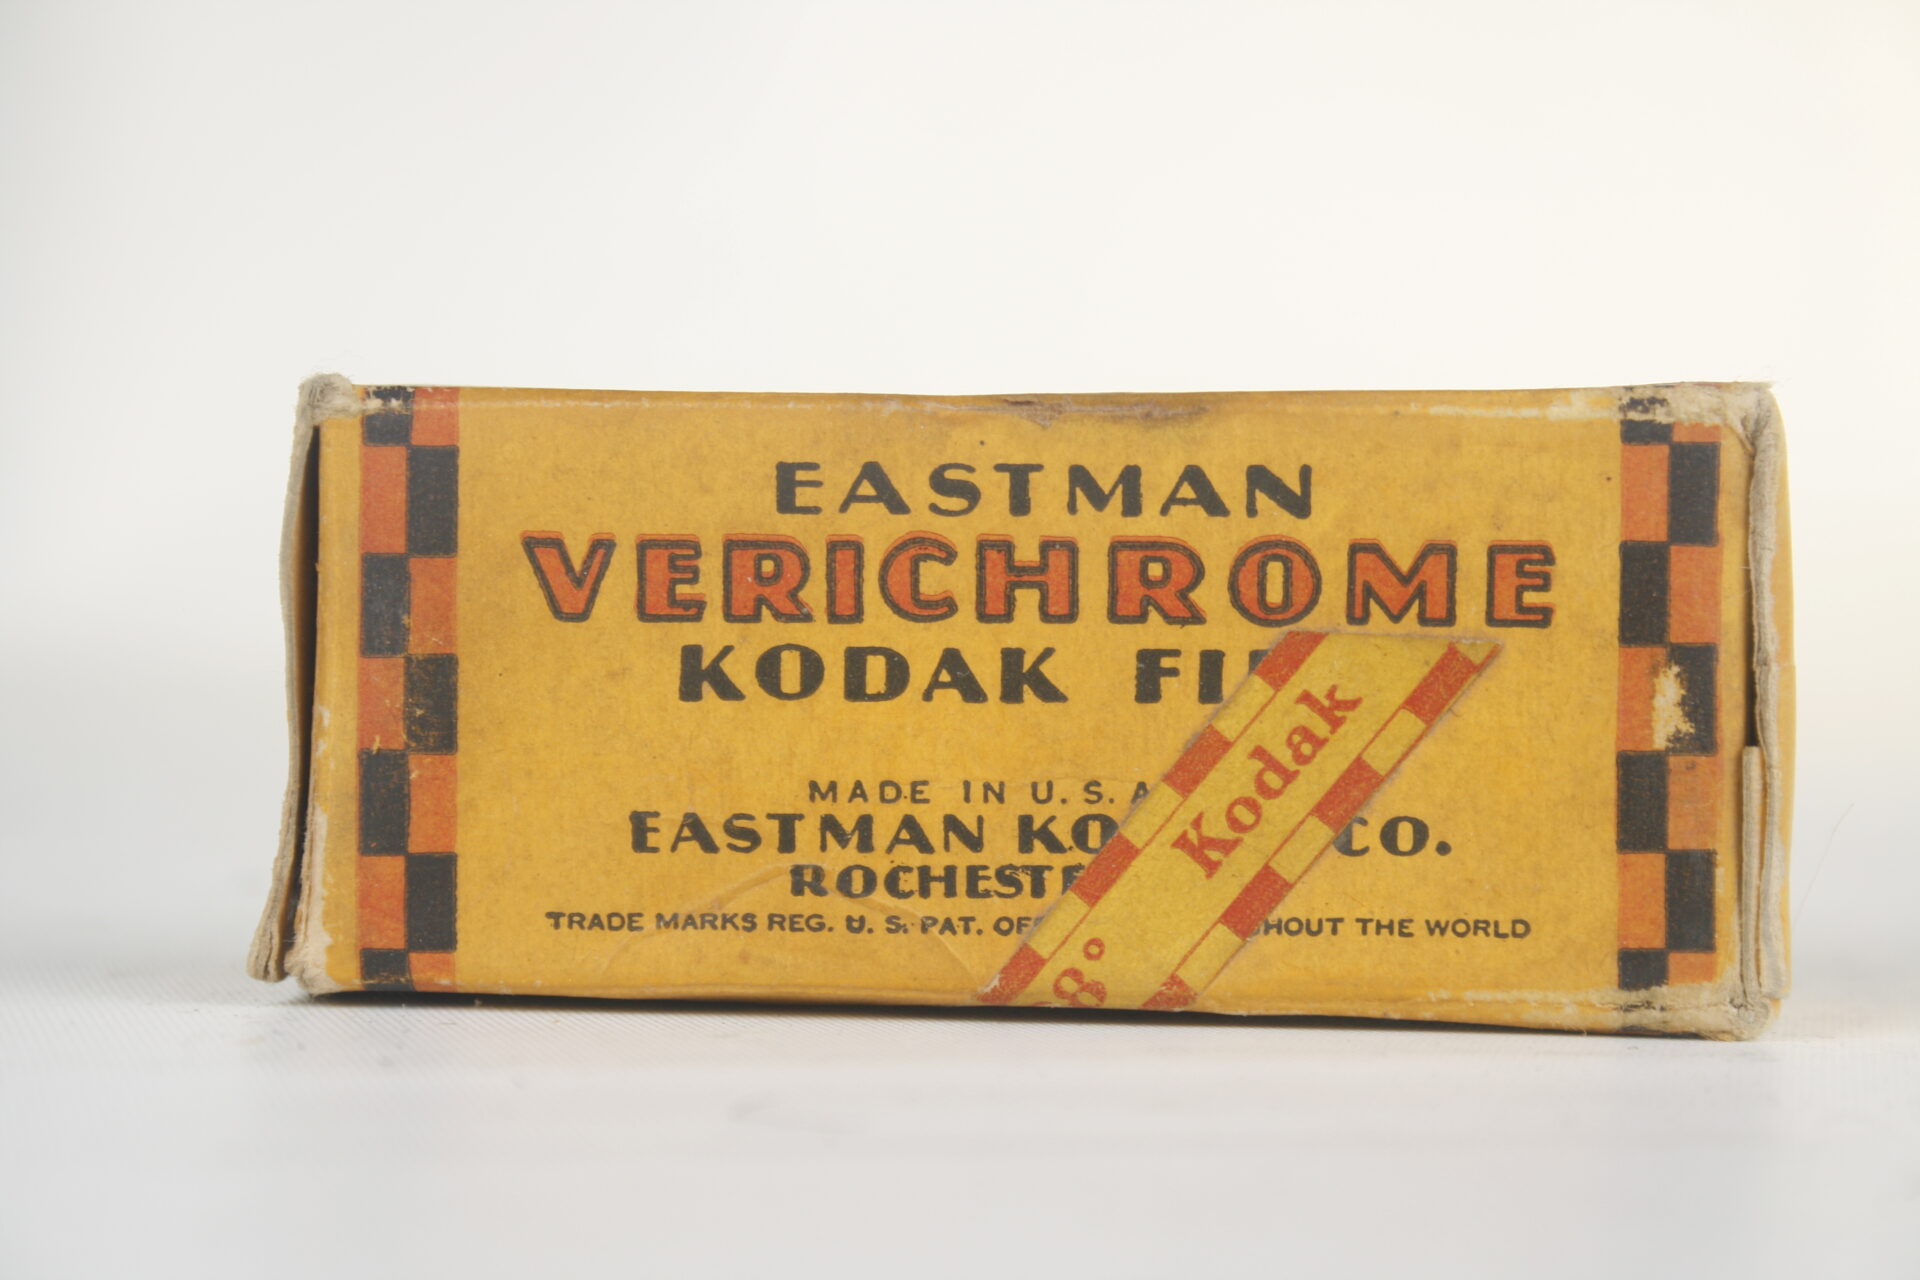 Kodak. Eastman Verichrome Kodak film.